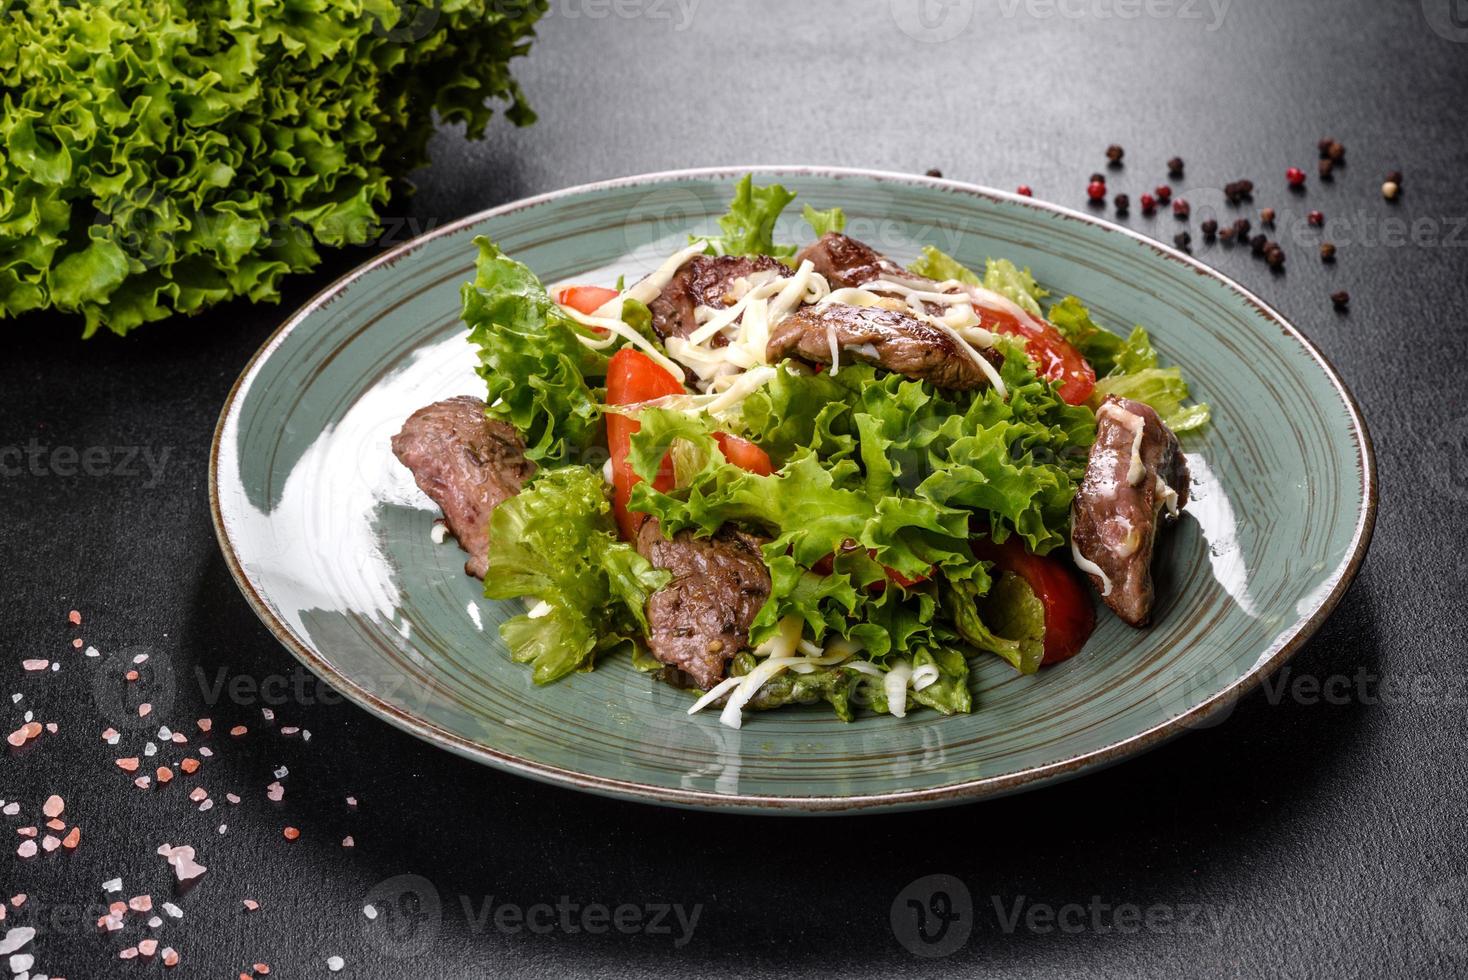 délicieuse salade fraîche avec du boeuf, du fromage, des tomates et des feuilles de laitue photo